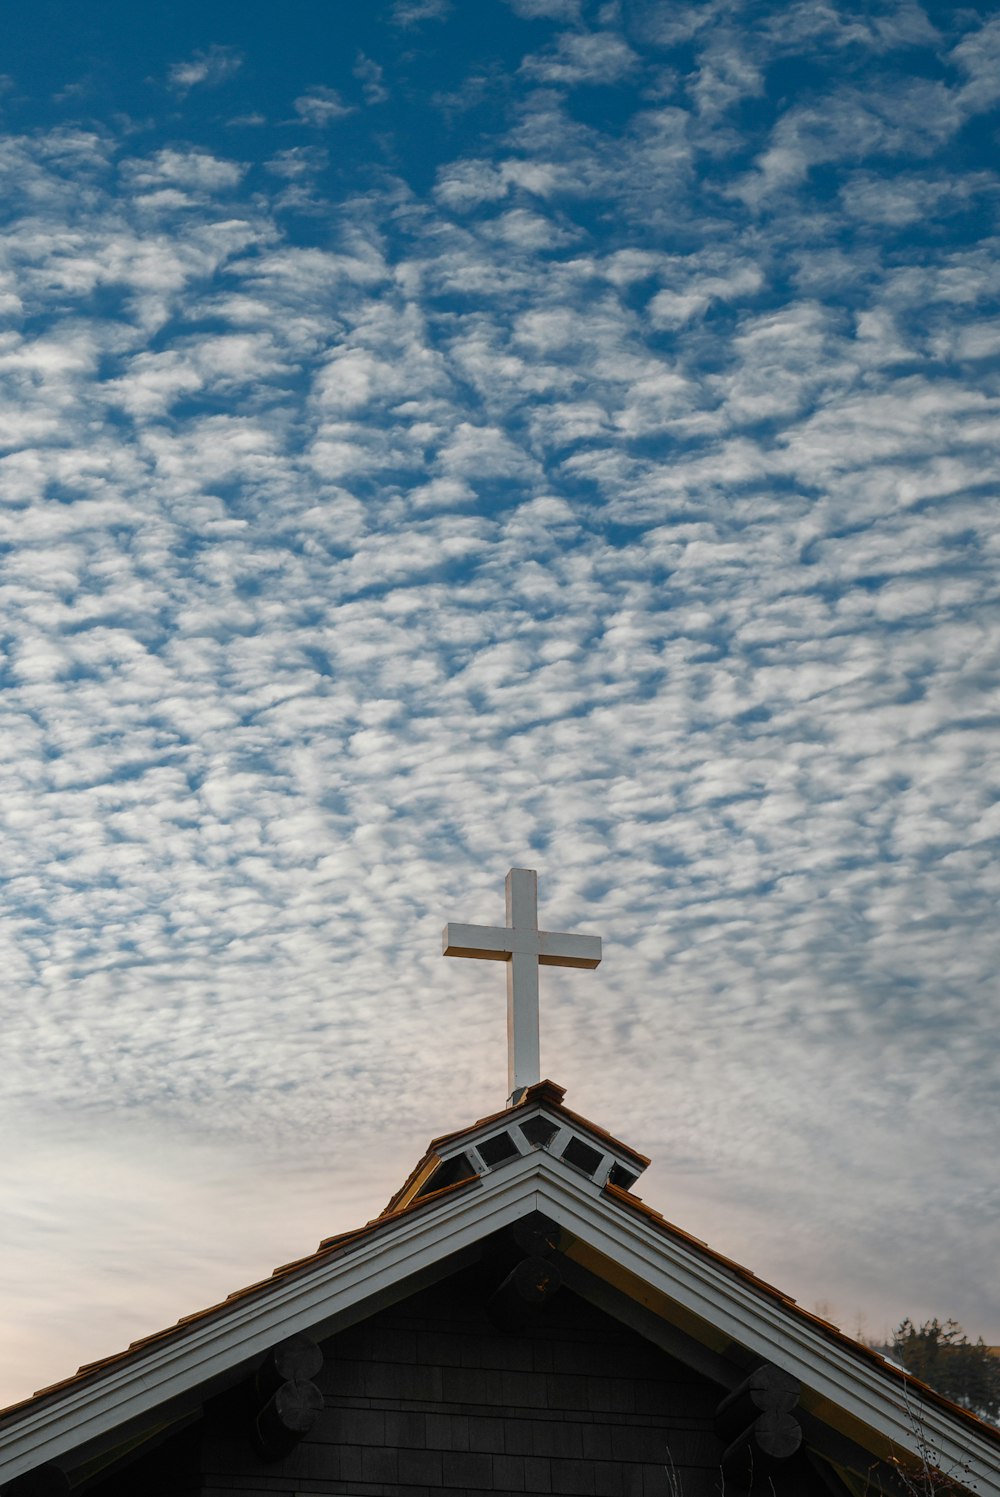 Chiesa marrone e bianca sotto cielo blu e nuvole bianche durante il giorno